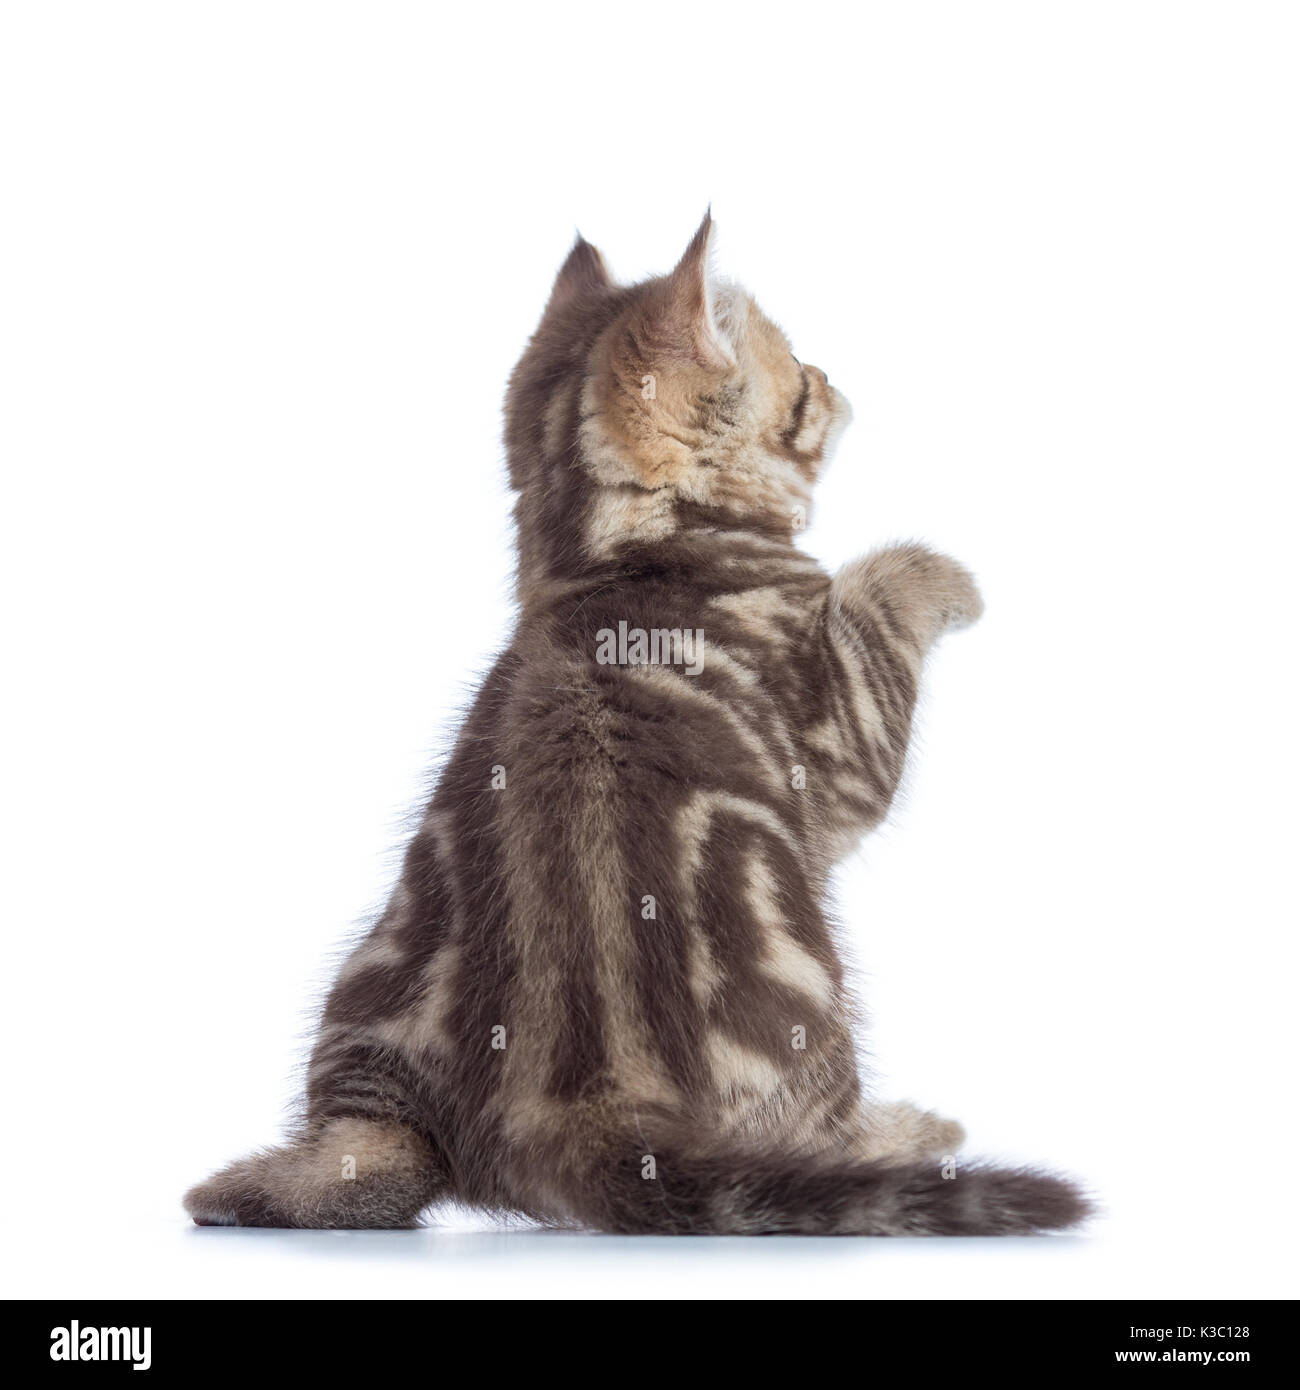 Ansicht der Rückseite des verspielten tabby-cat Kitten auf weißem Hintergrund Stockfoto